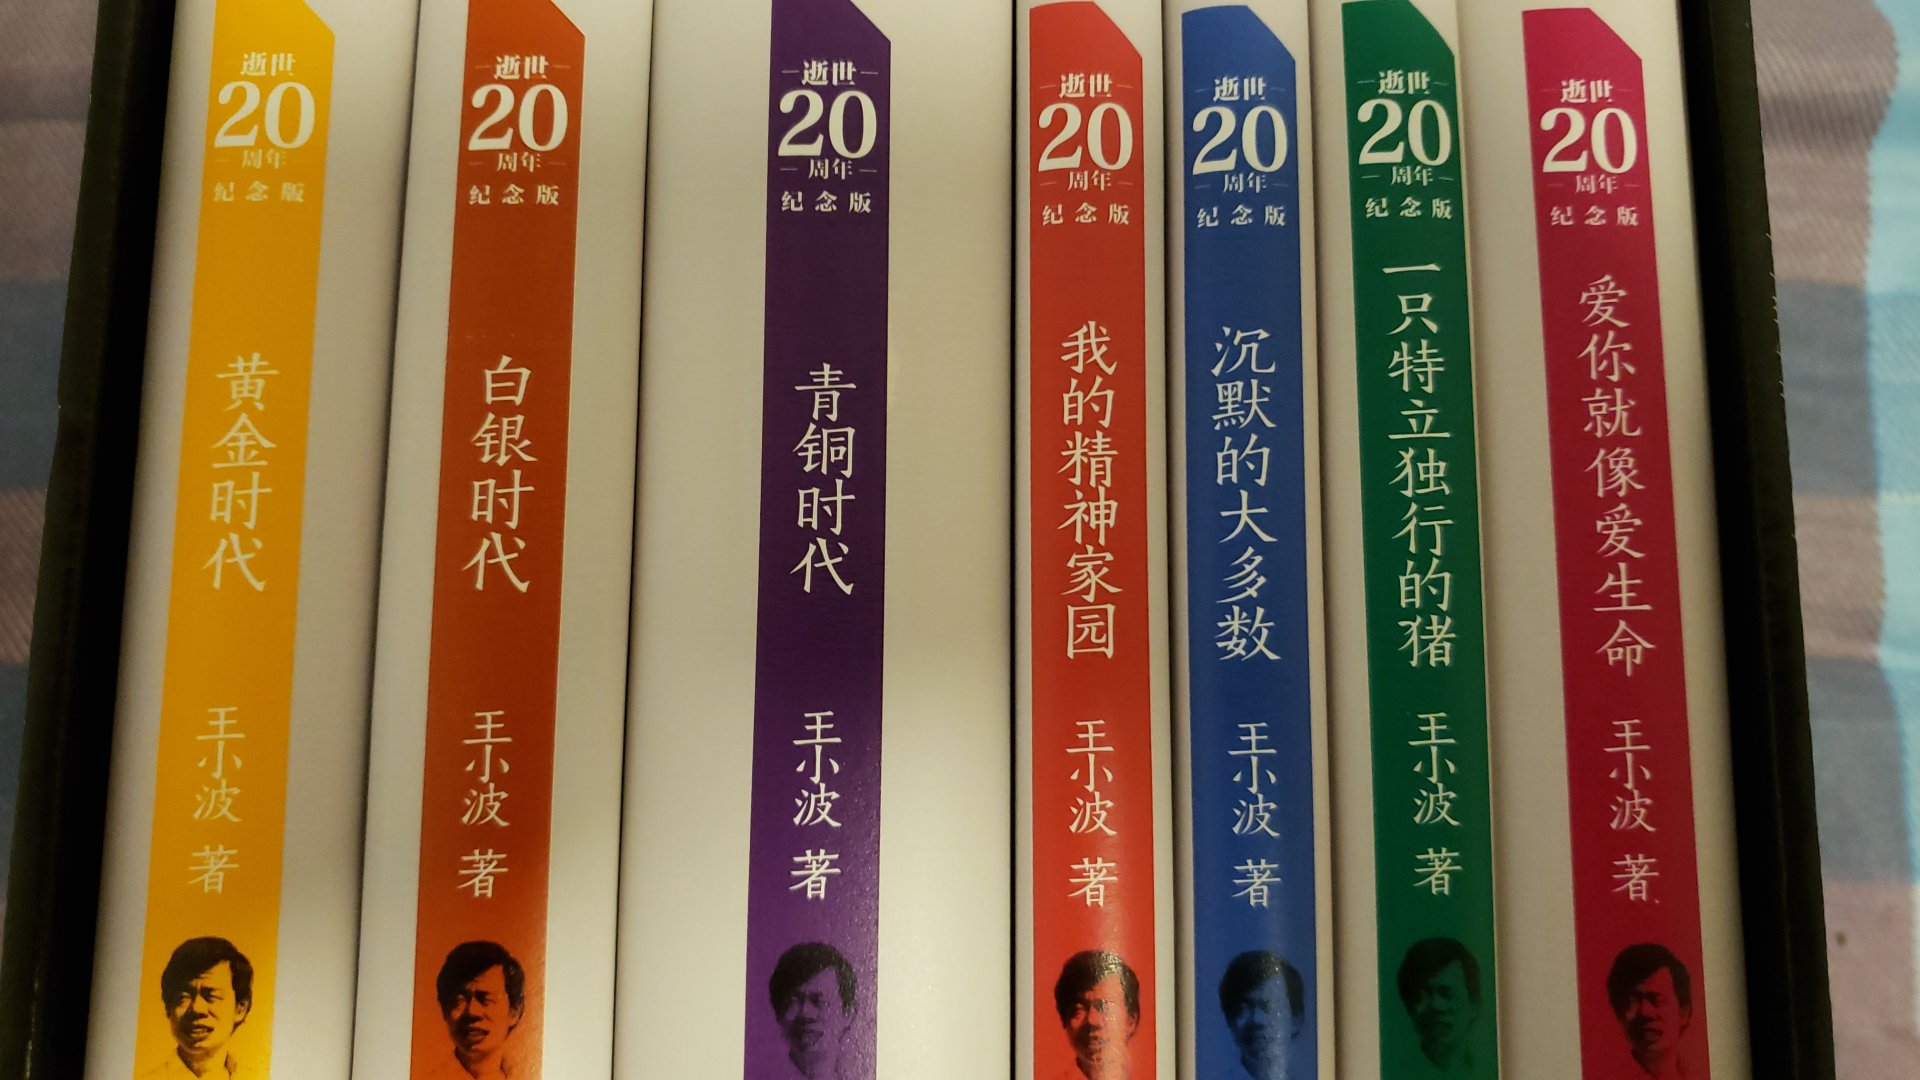 最喜欢王小波了，语言十分有魅力，曾经有一段时间是我的情感指导手册